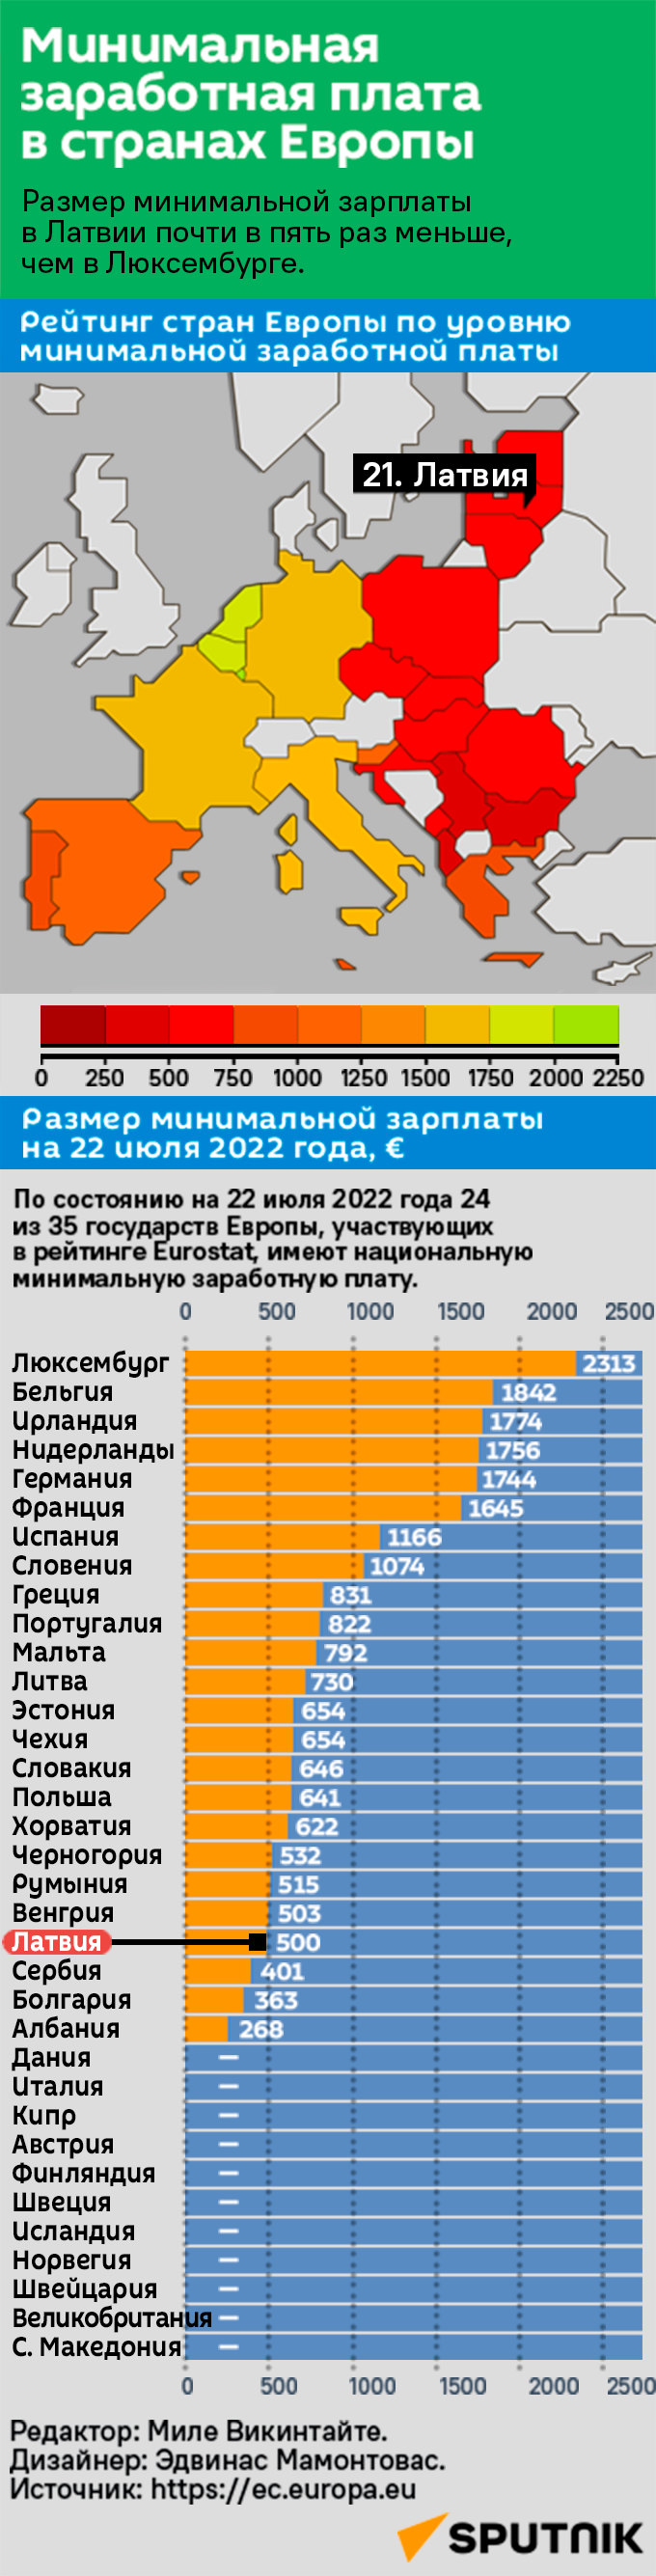 Минимальная заработная плата в странах Европы 2022 год - Sputnik Латвия